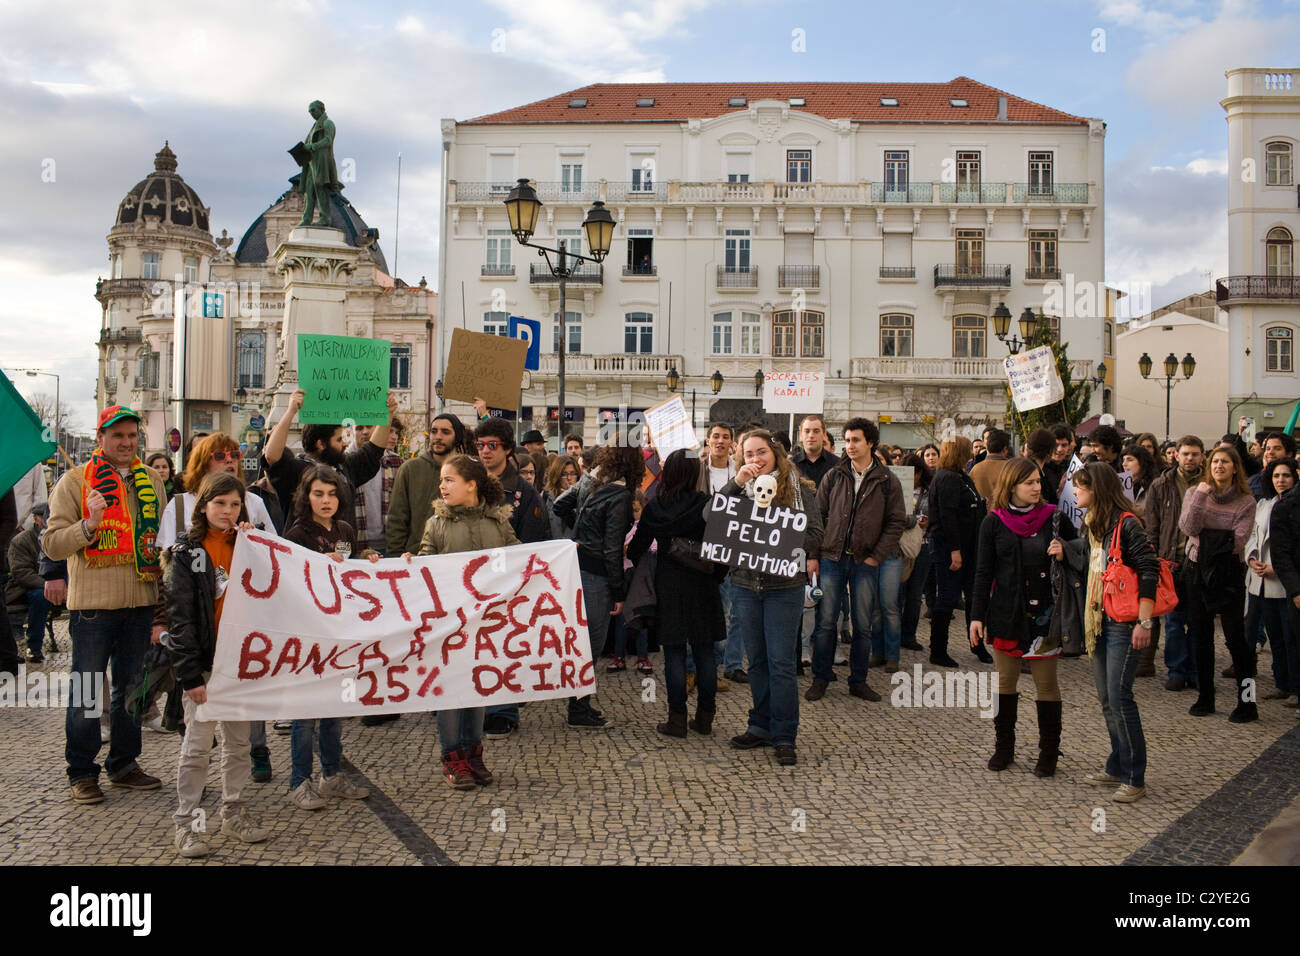 Anti-bank, pro-lavori protesta a Coimbra, Portogallo Foto Stock